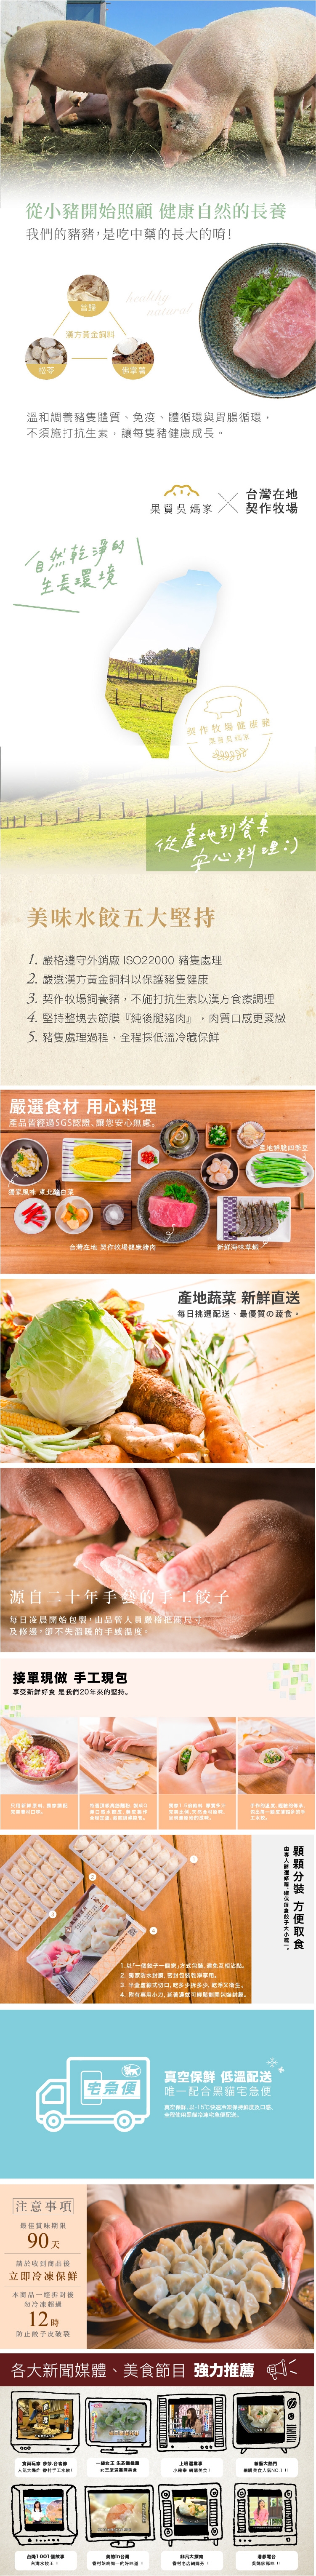 果貿吳媽家四季豆鮮肉水餃(1盒/24入)